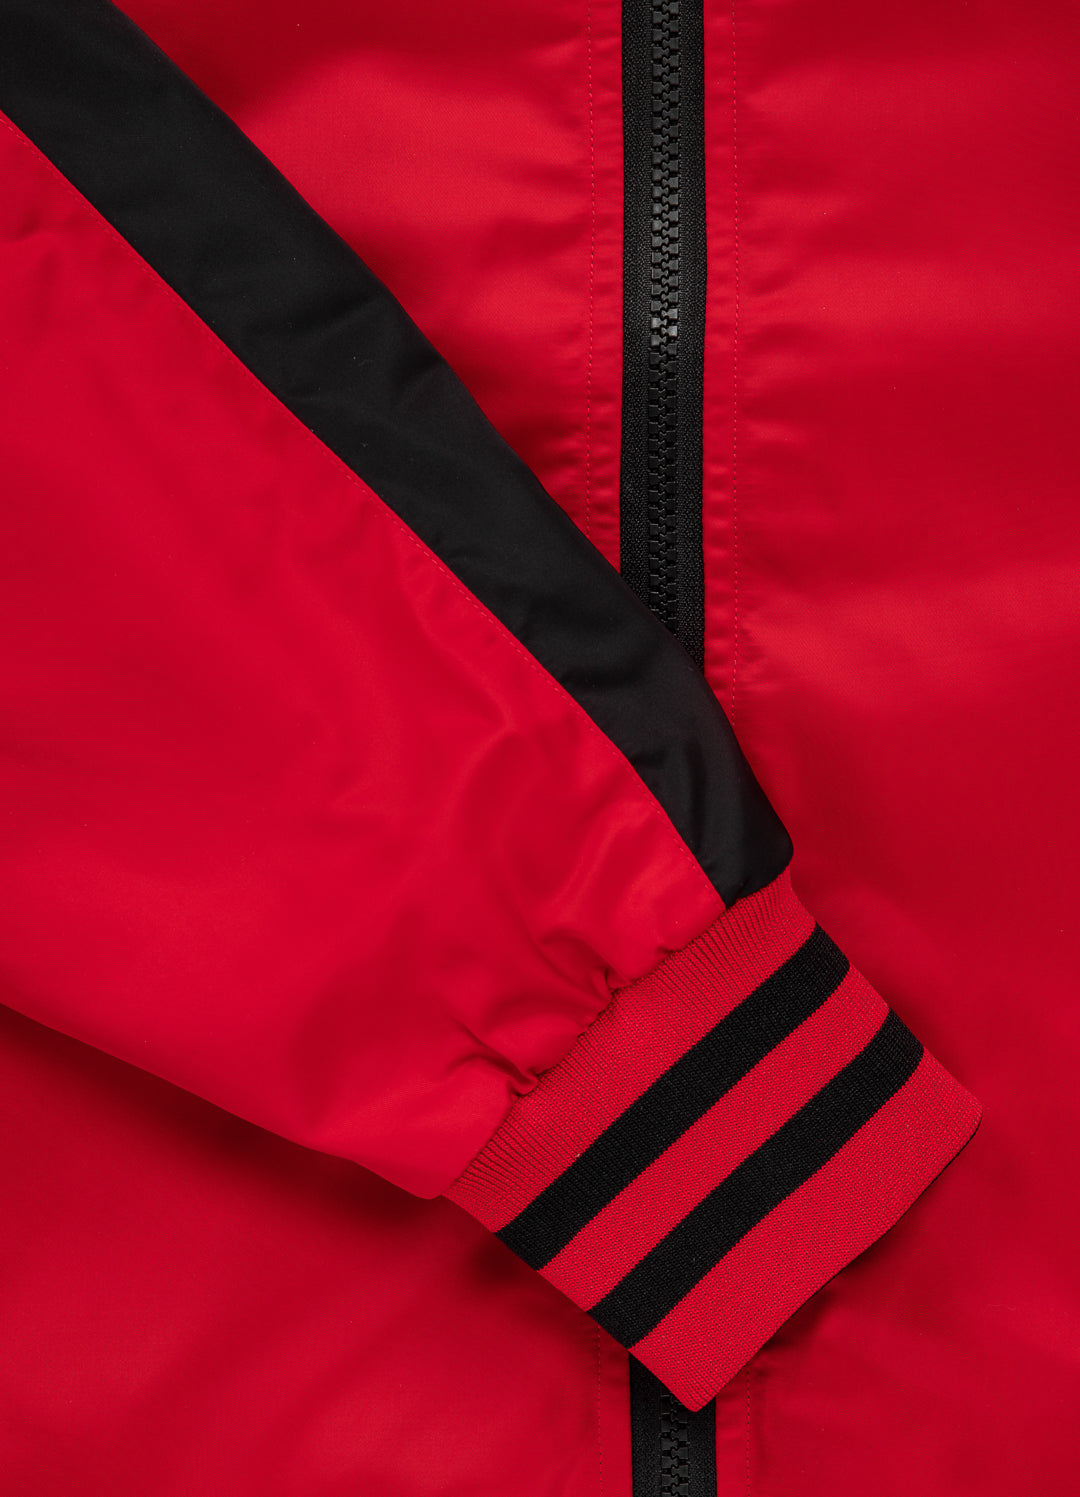 BROADWAY Red Reversible Jacket.